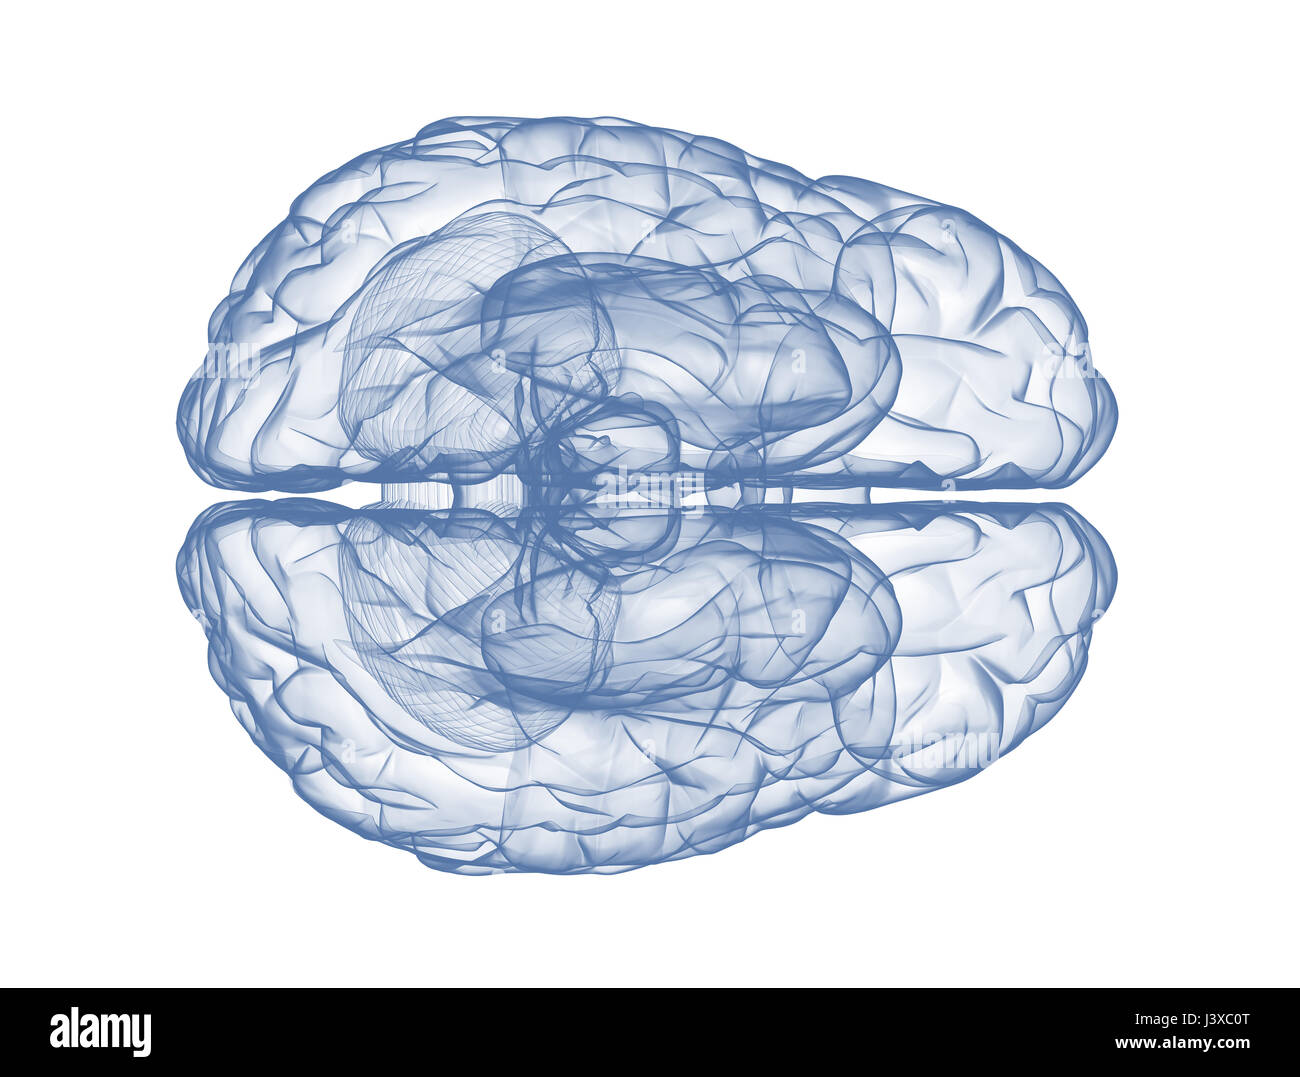 Menschliche Gehirn - Draufsicht blau 3d Render isoliert auf weiss Stockfoto